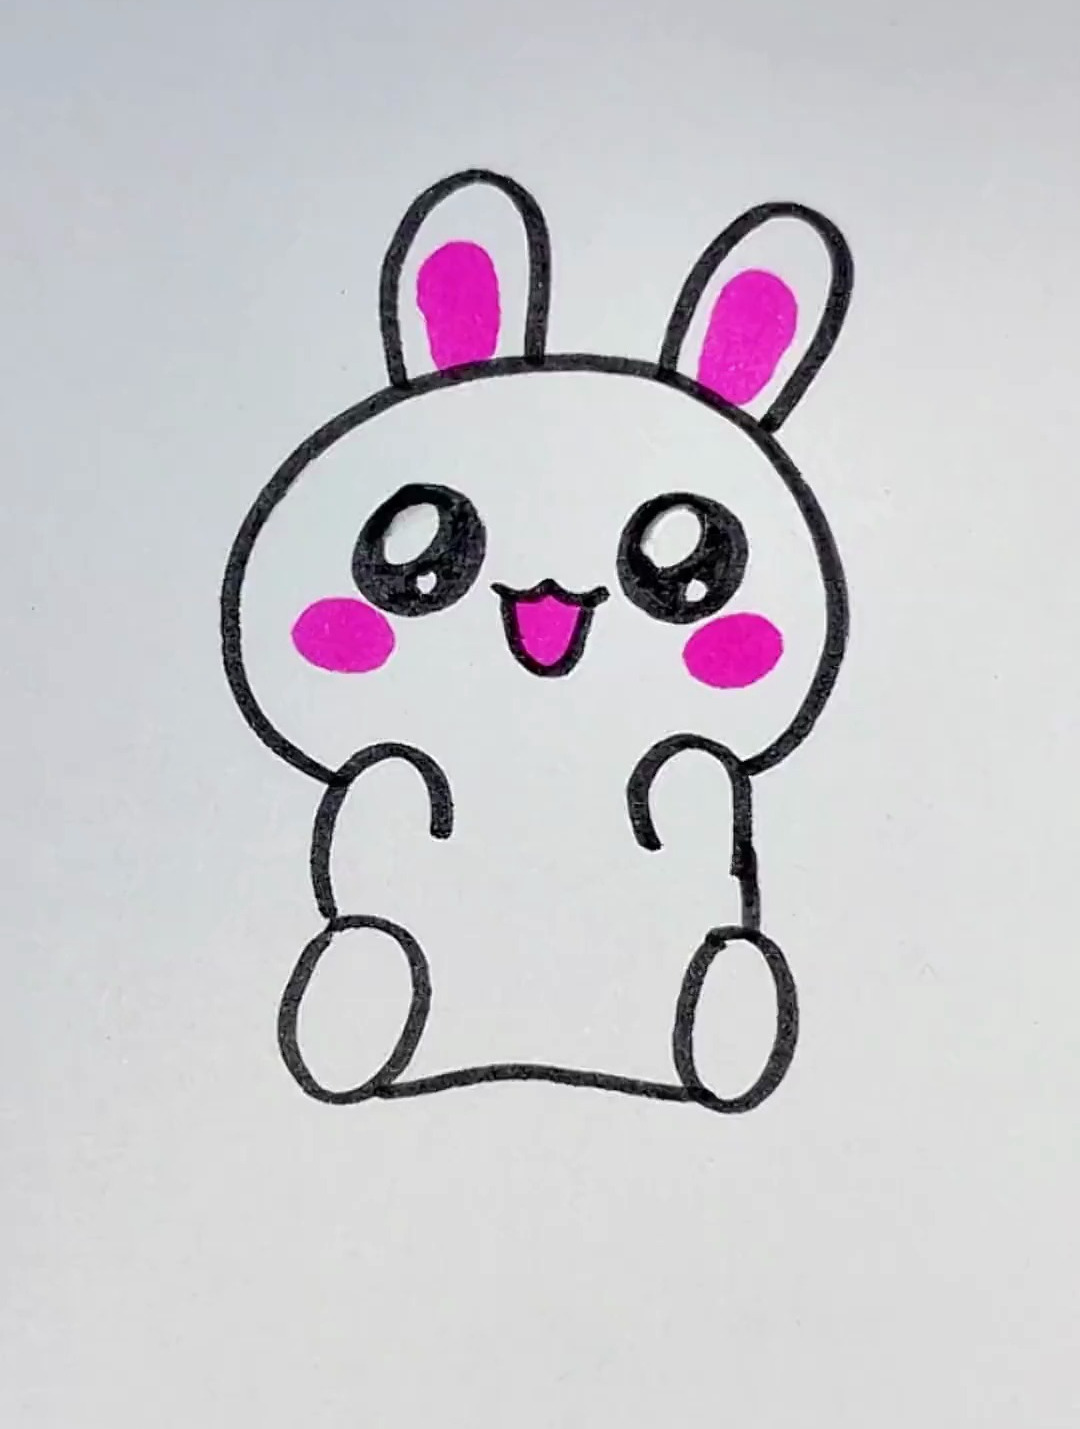 小兔子的画法简笔画图片